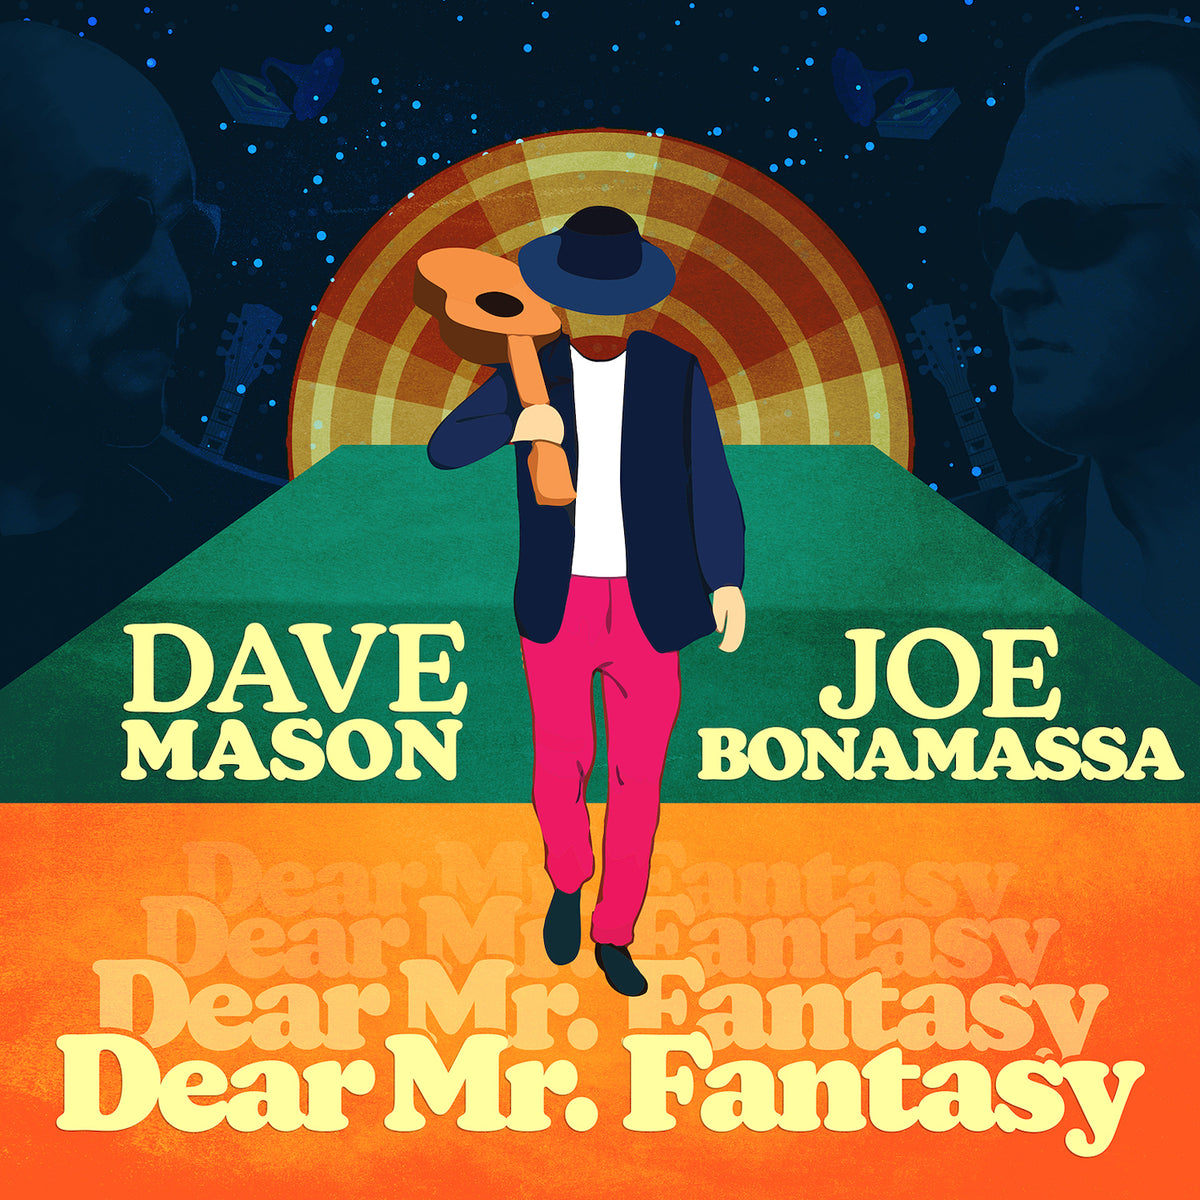 Dave Mason & Joe Bonamassa: "Dear Mr. Fantasy" - Single